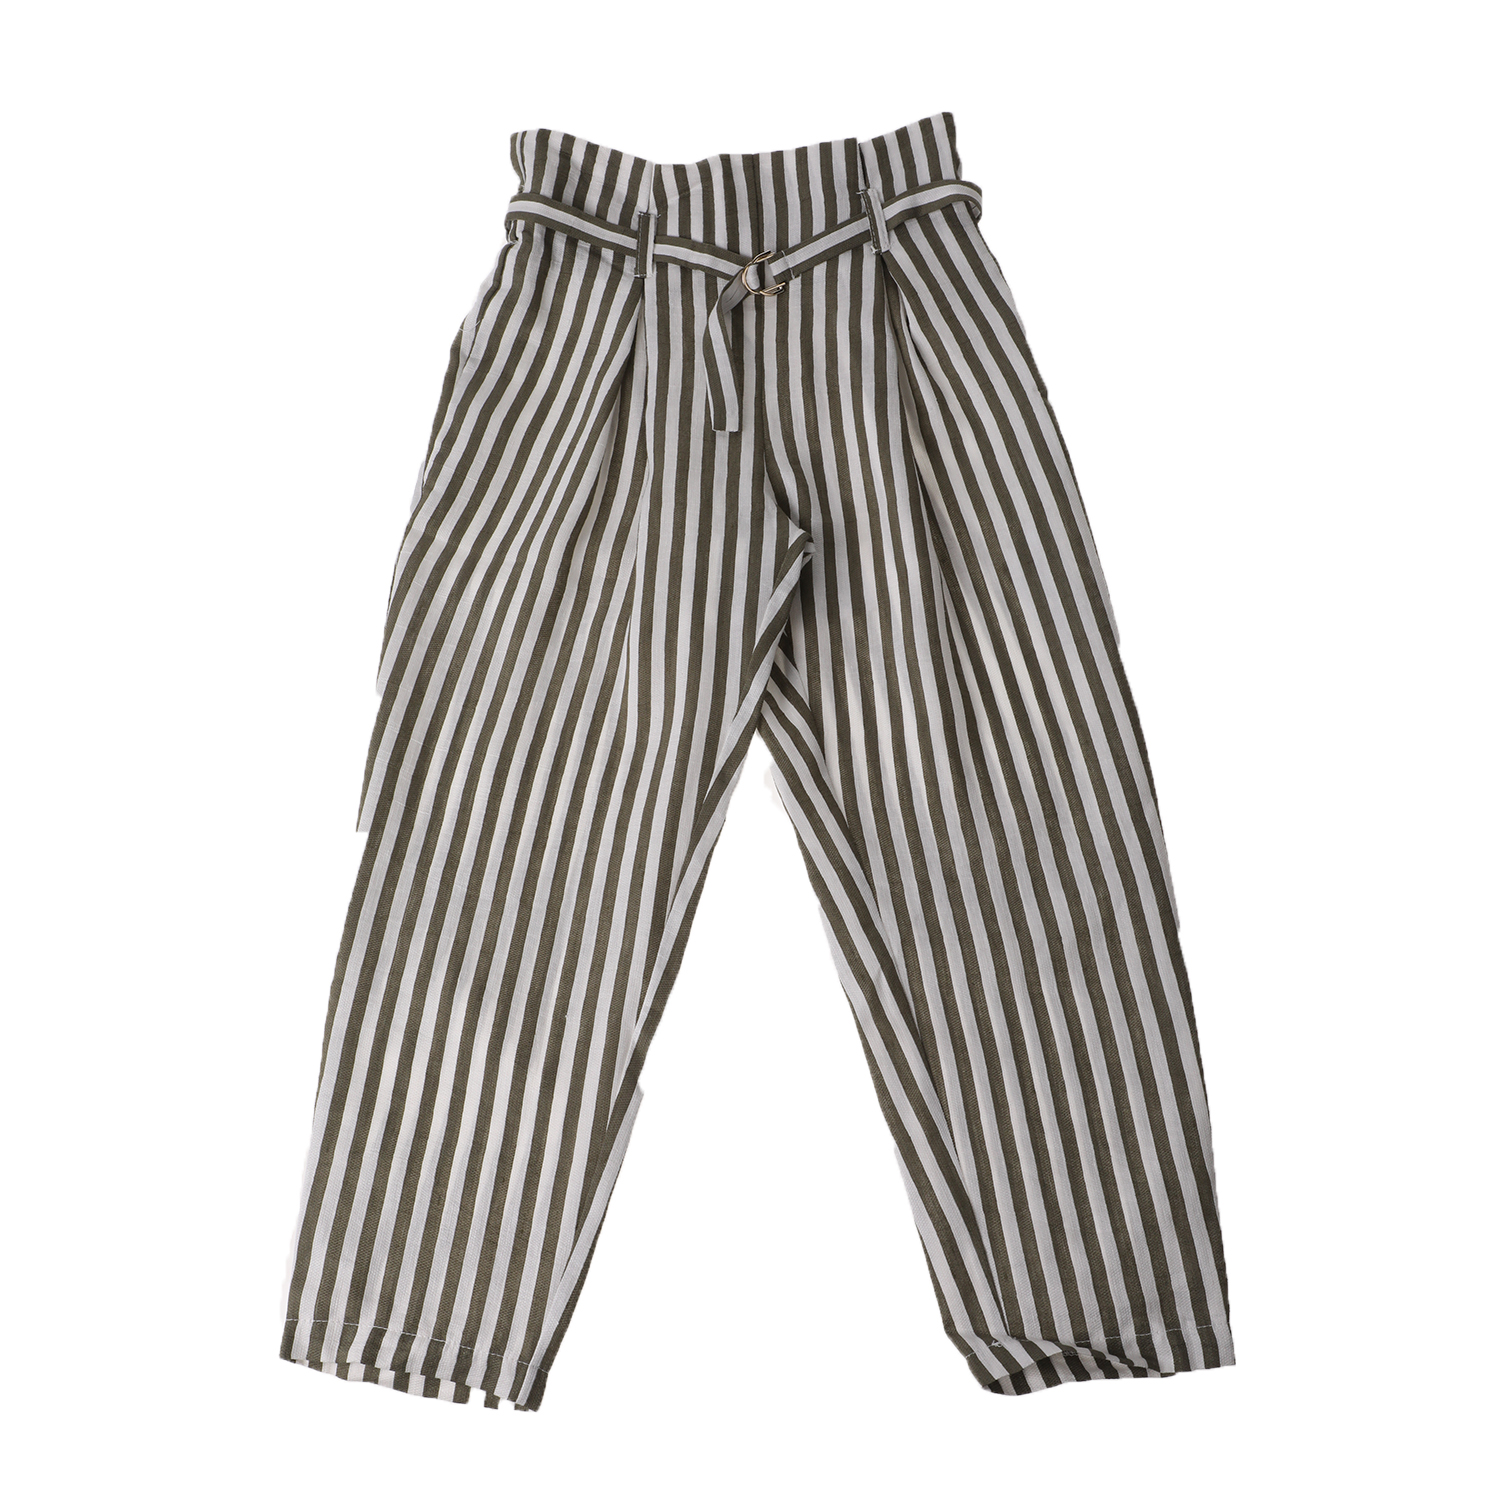 Παιδικά/Girls/Ρούχα/Παντελόνια JAKIOO - Παιδική παντελόνα JAKIOO PANTALONI A RIGHE ριγέ